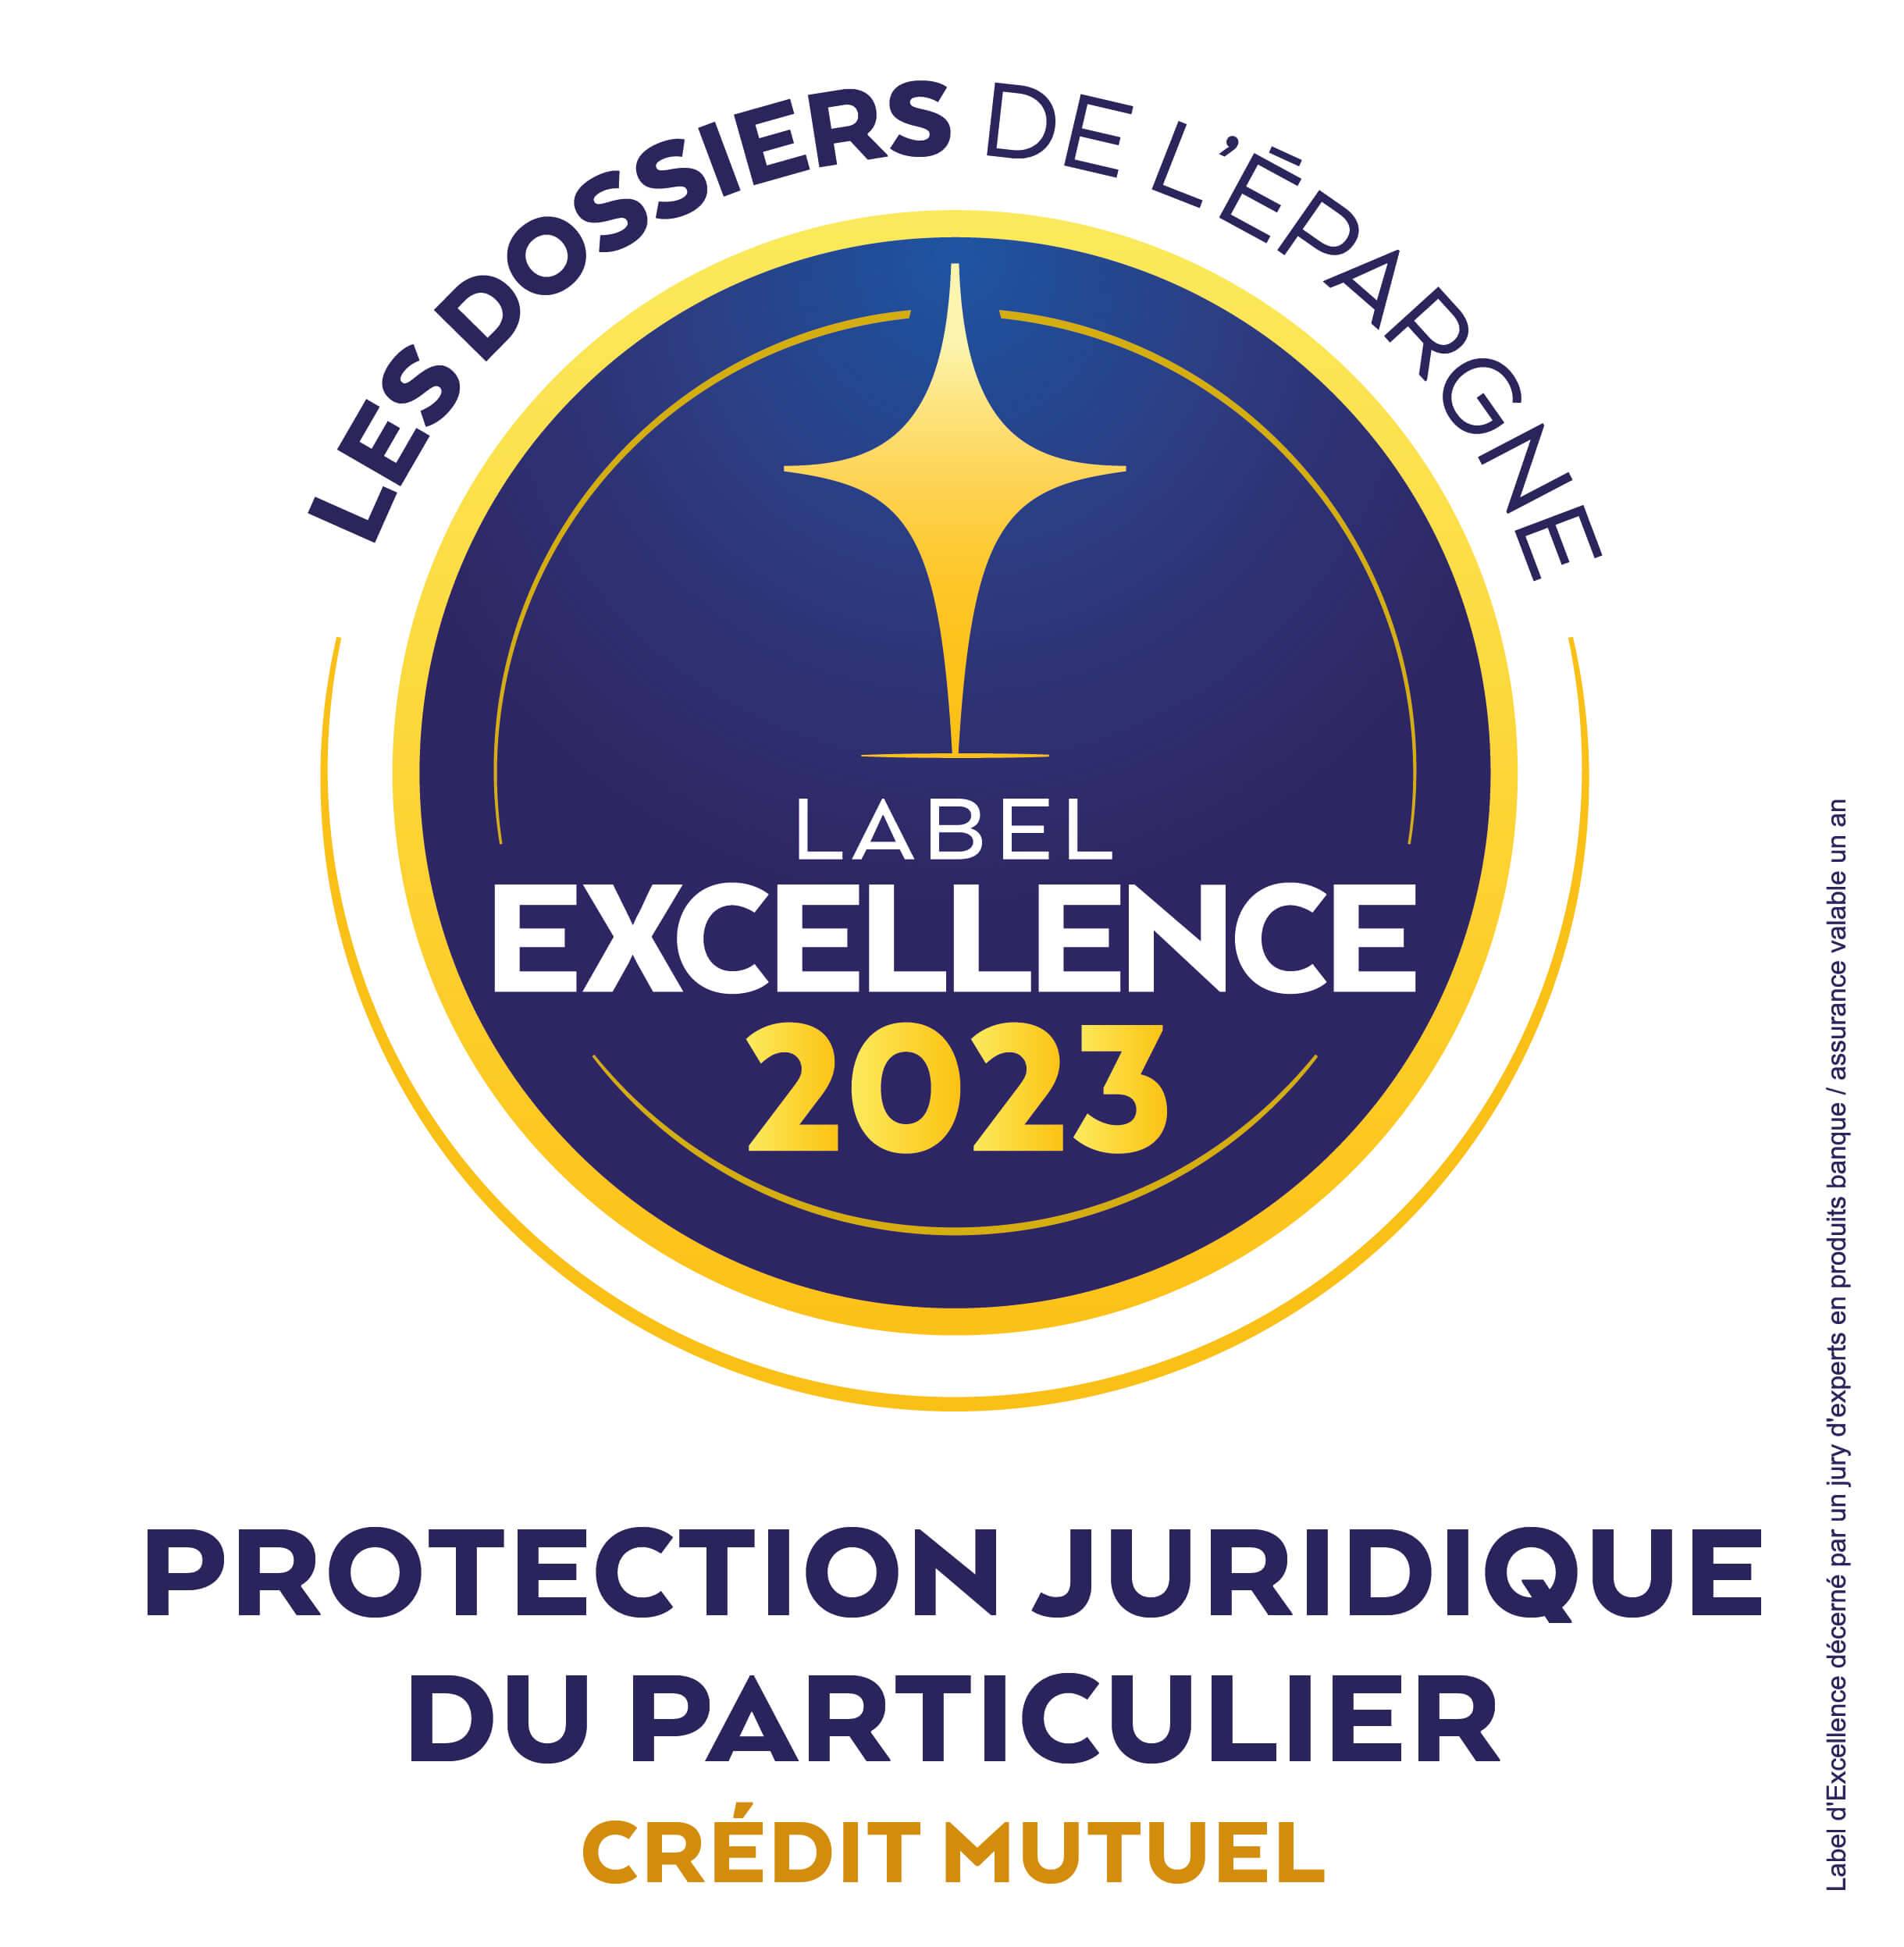 Label Excellence « les Dossiers de l’Epargne » 2023